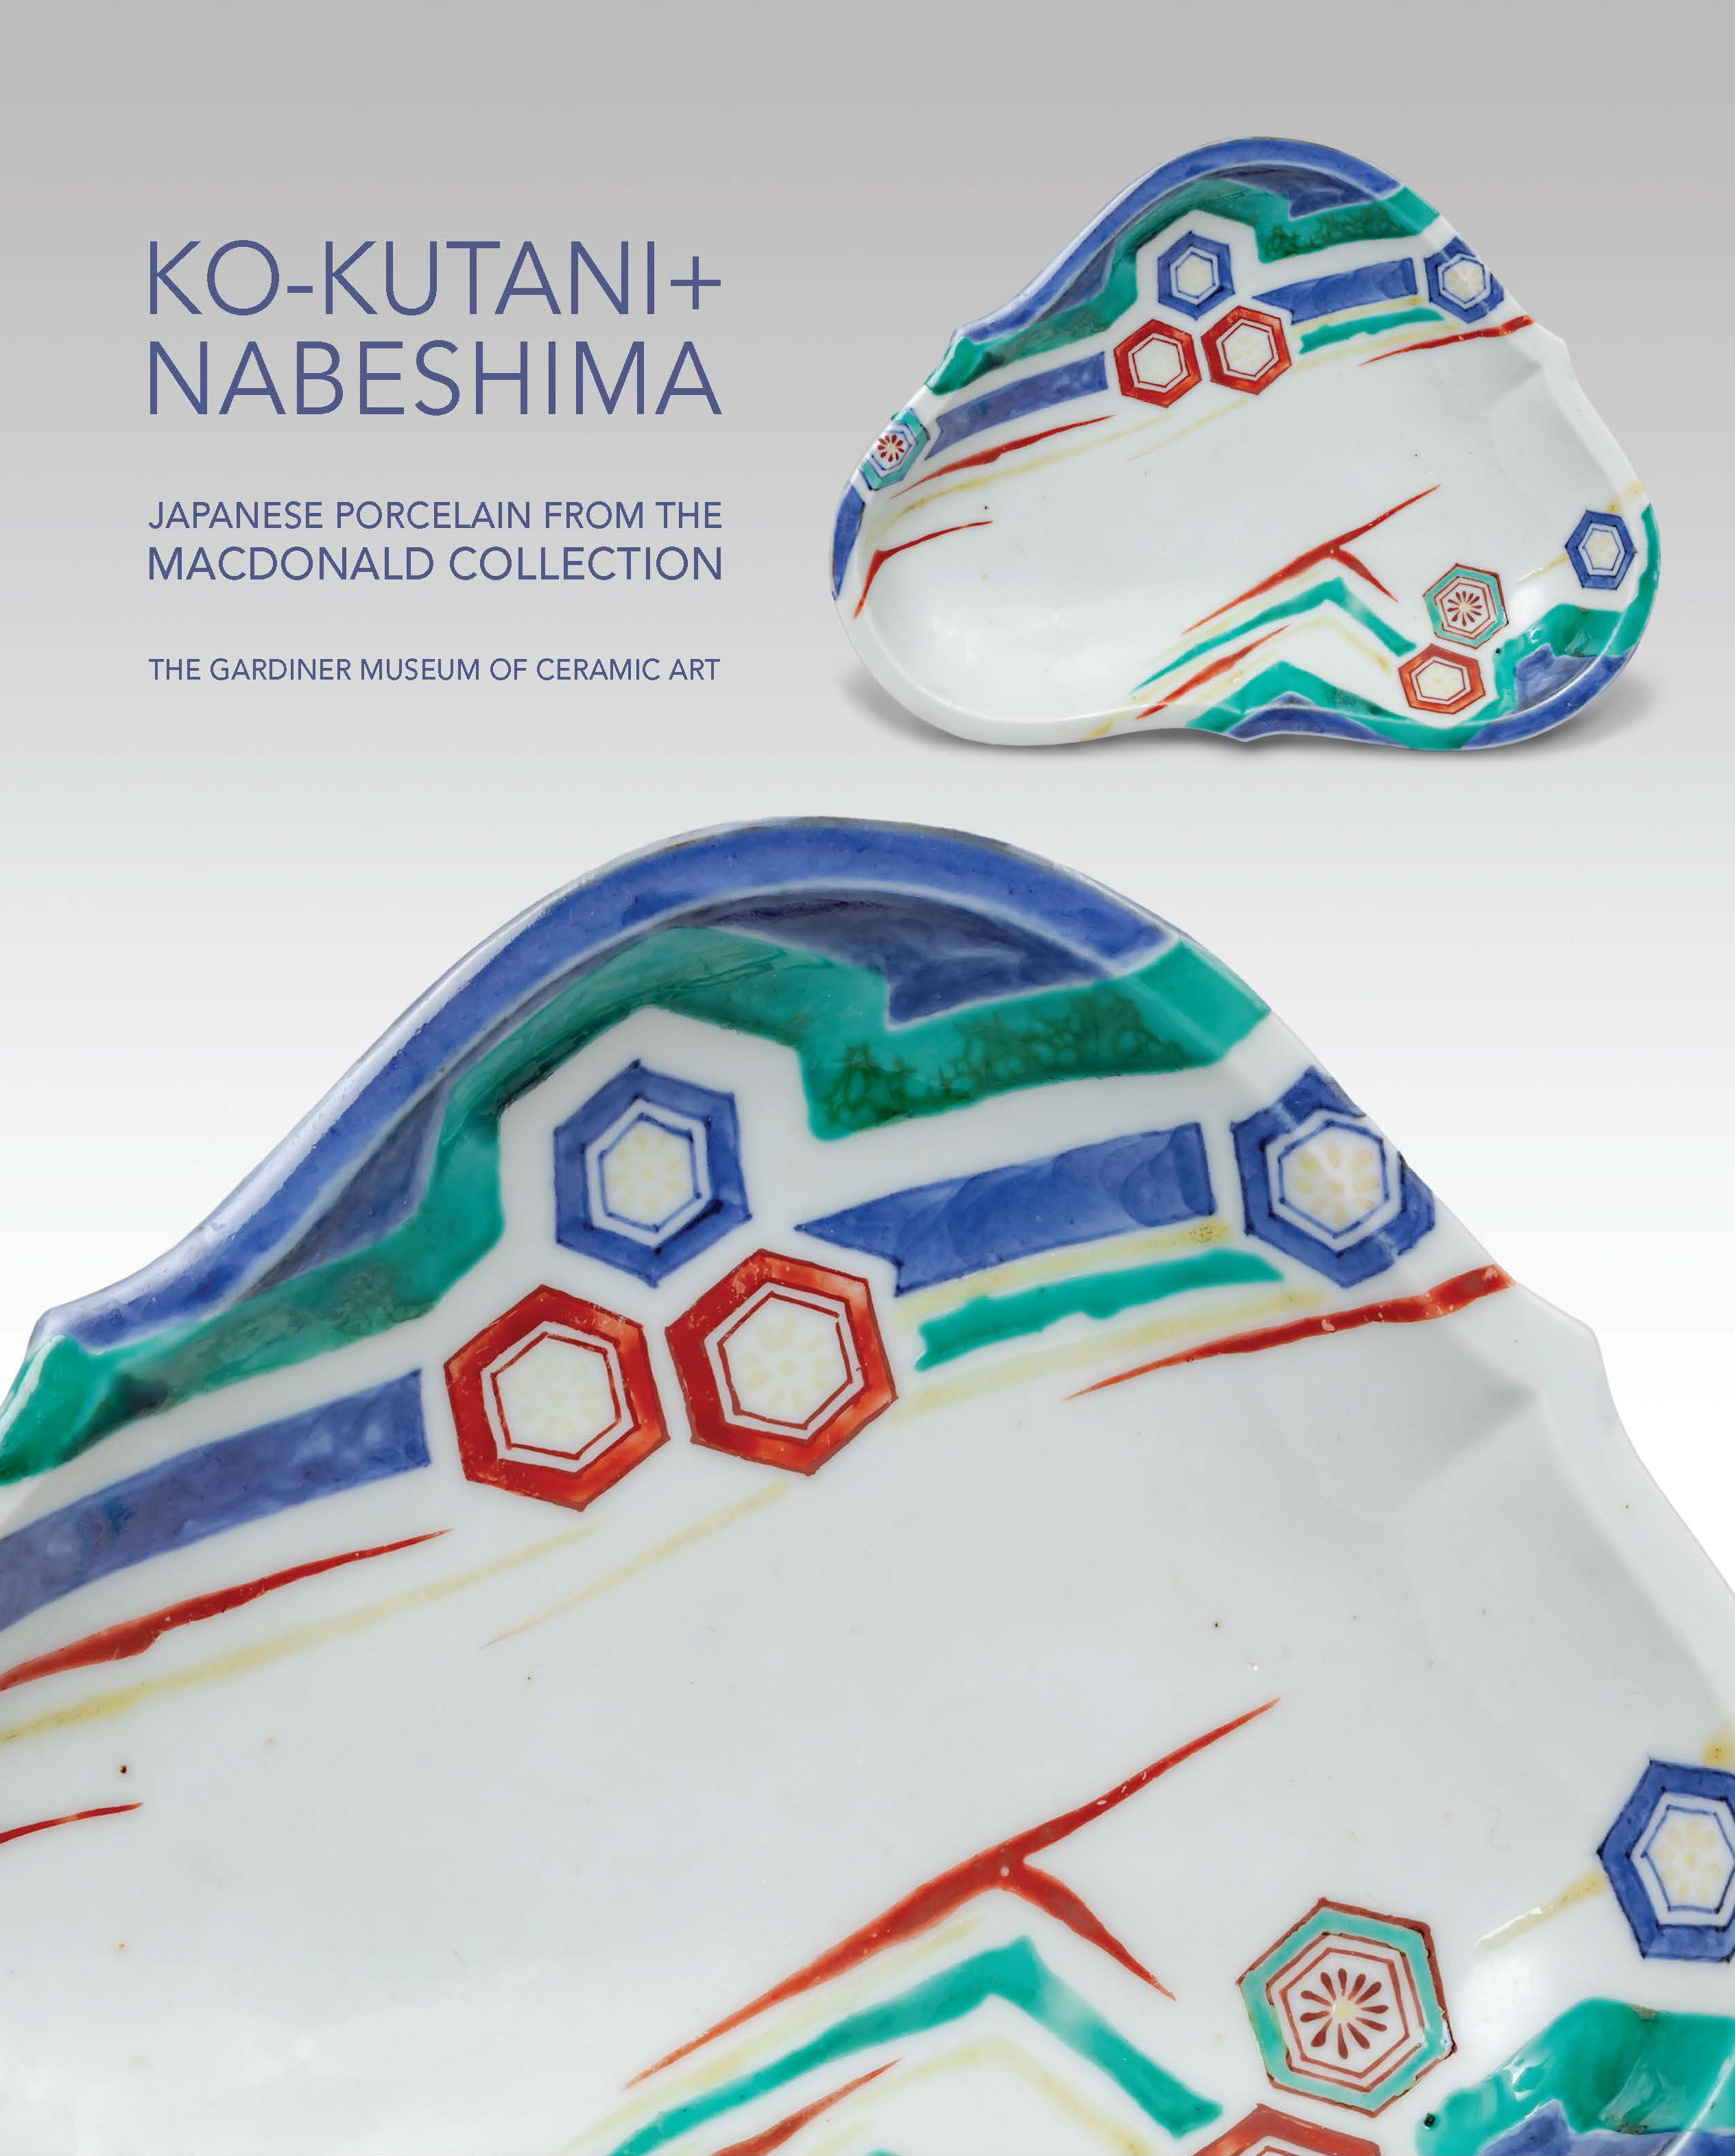 Ko-Kutani + Nabeshima: Japanese Porcelain from the Macdonald Collection Product Image 1 of 2